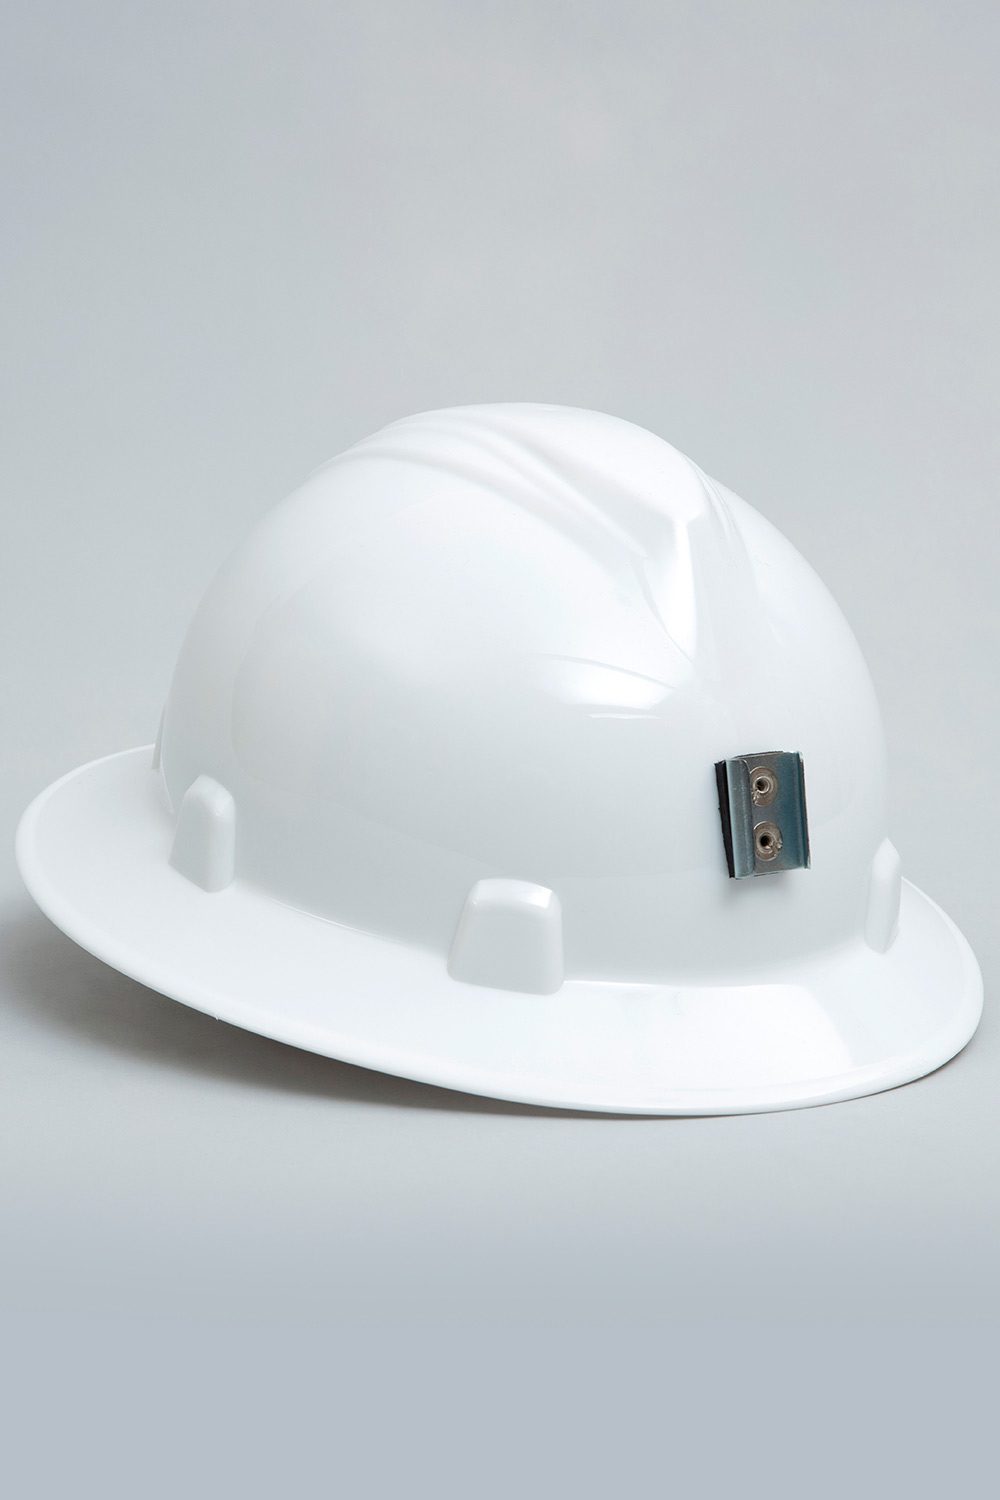 Color de cascos en la construcción: ¿cuál es el ideal para tu entorno? -  Equipos de seguridad industrial